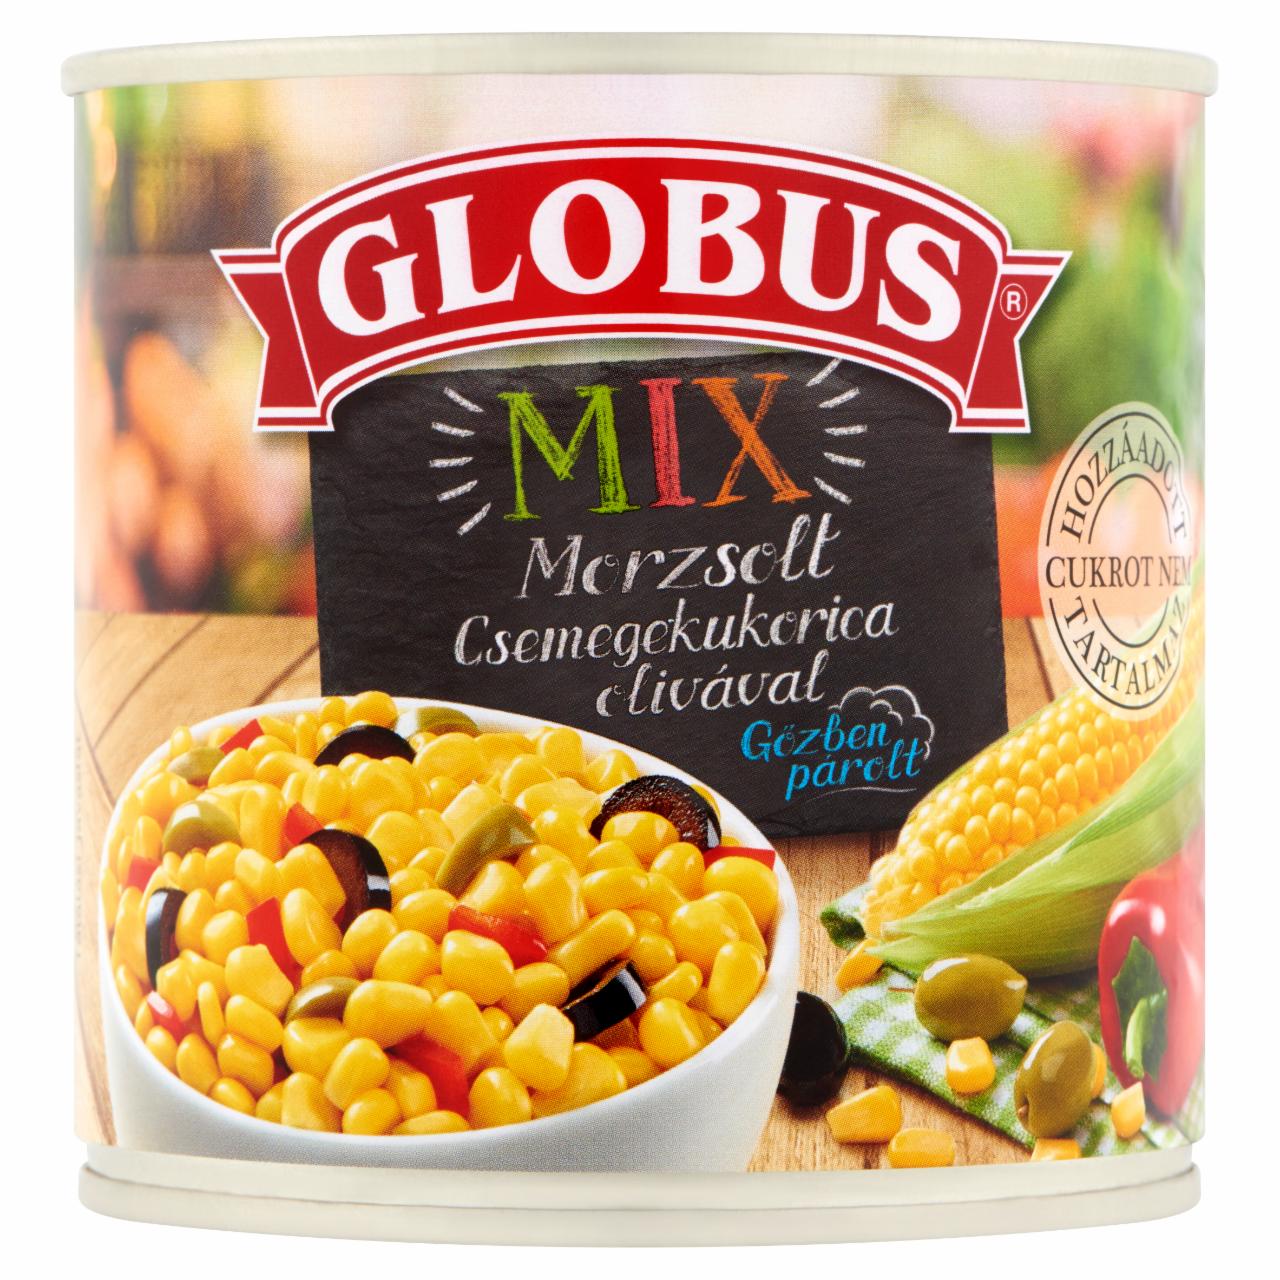 Képek - Globus Mix gőzben párolt, morzsolt csemegekukorica olívával 300 g